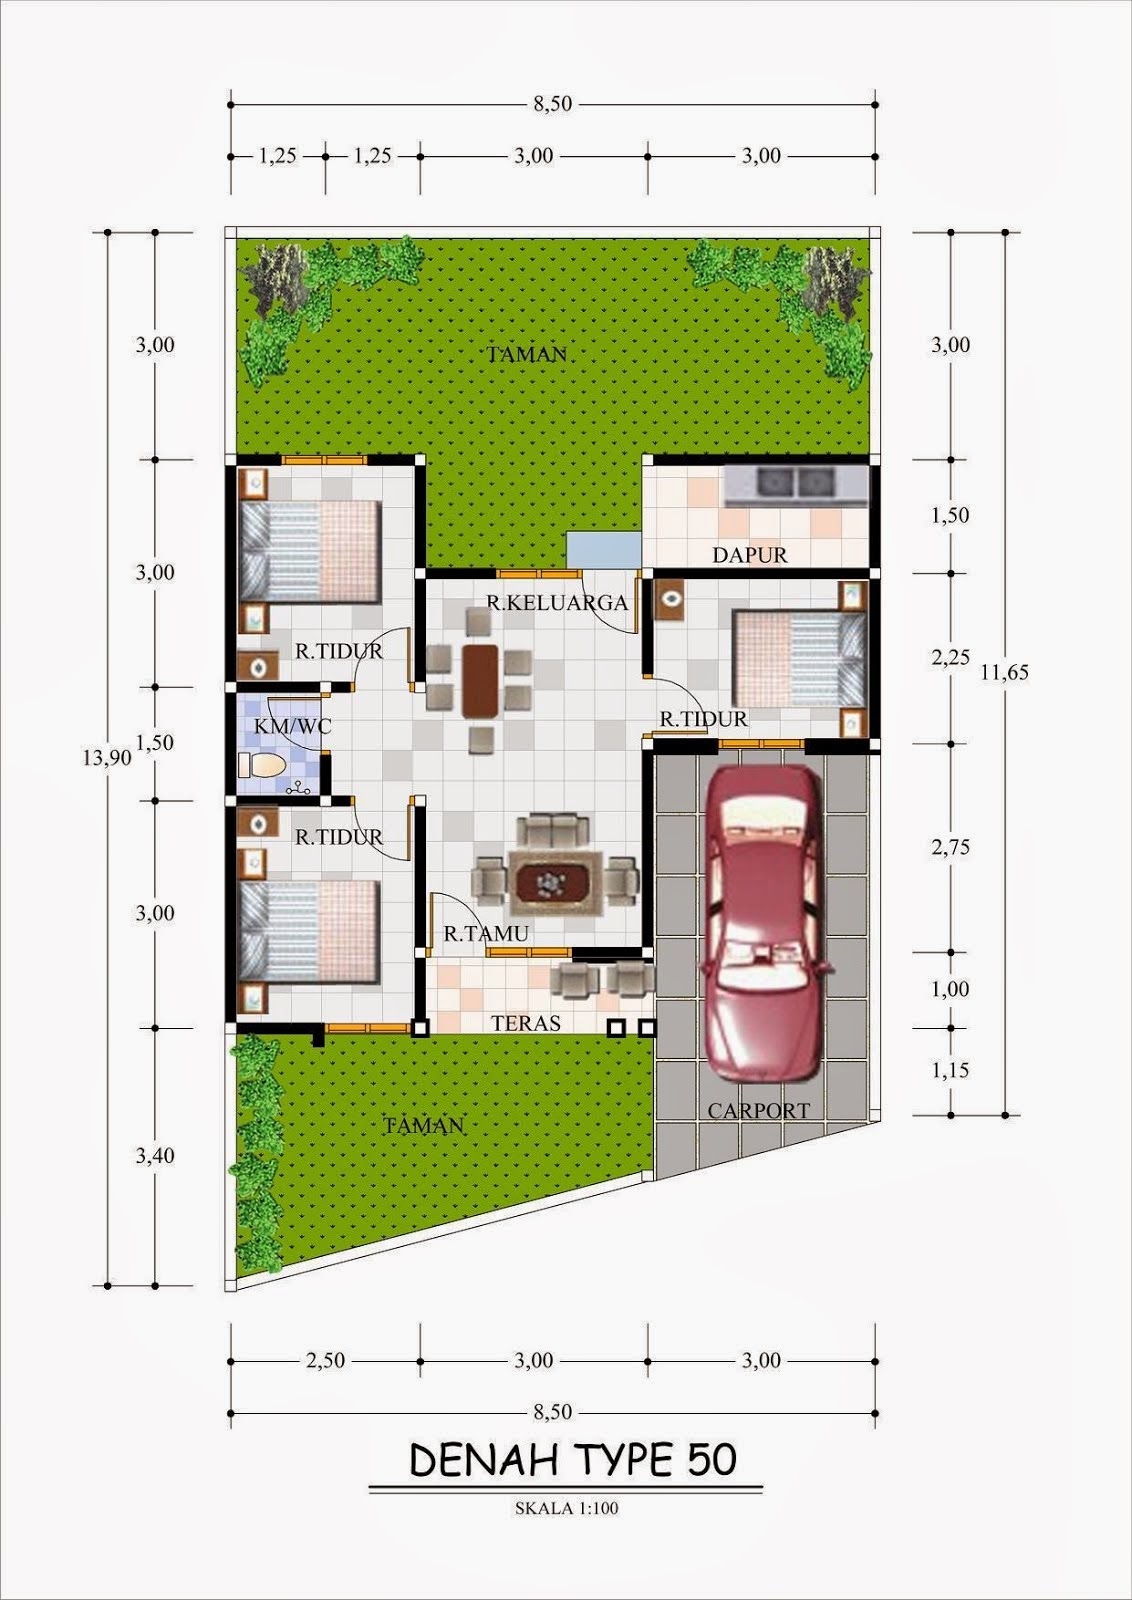 69 Desain Interior Rumah Minimalis Type 40 Desain Rumah Minimalis